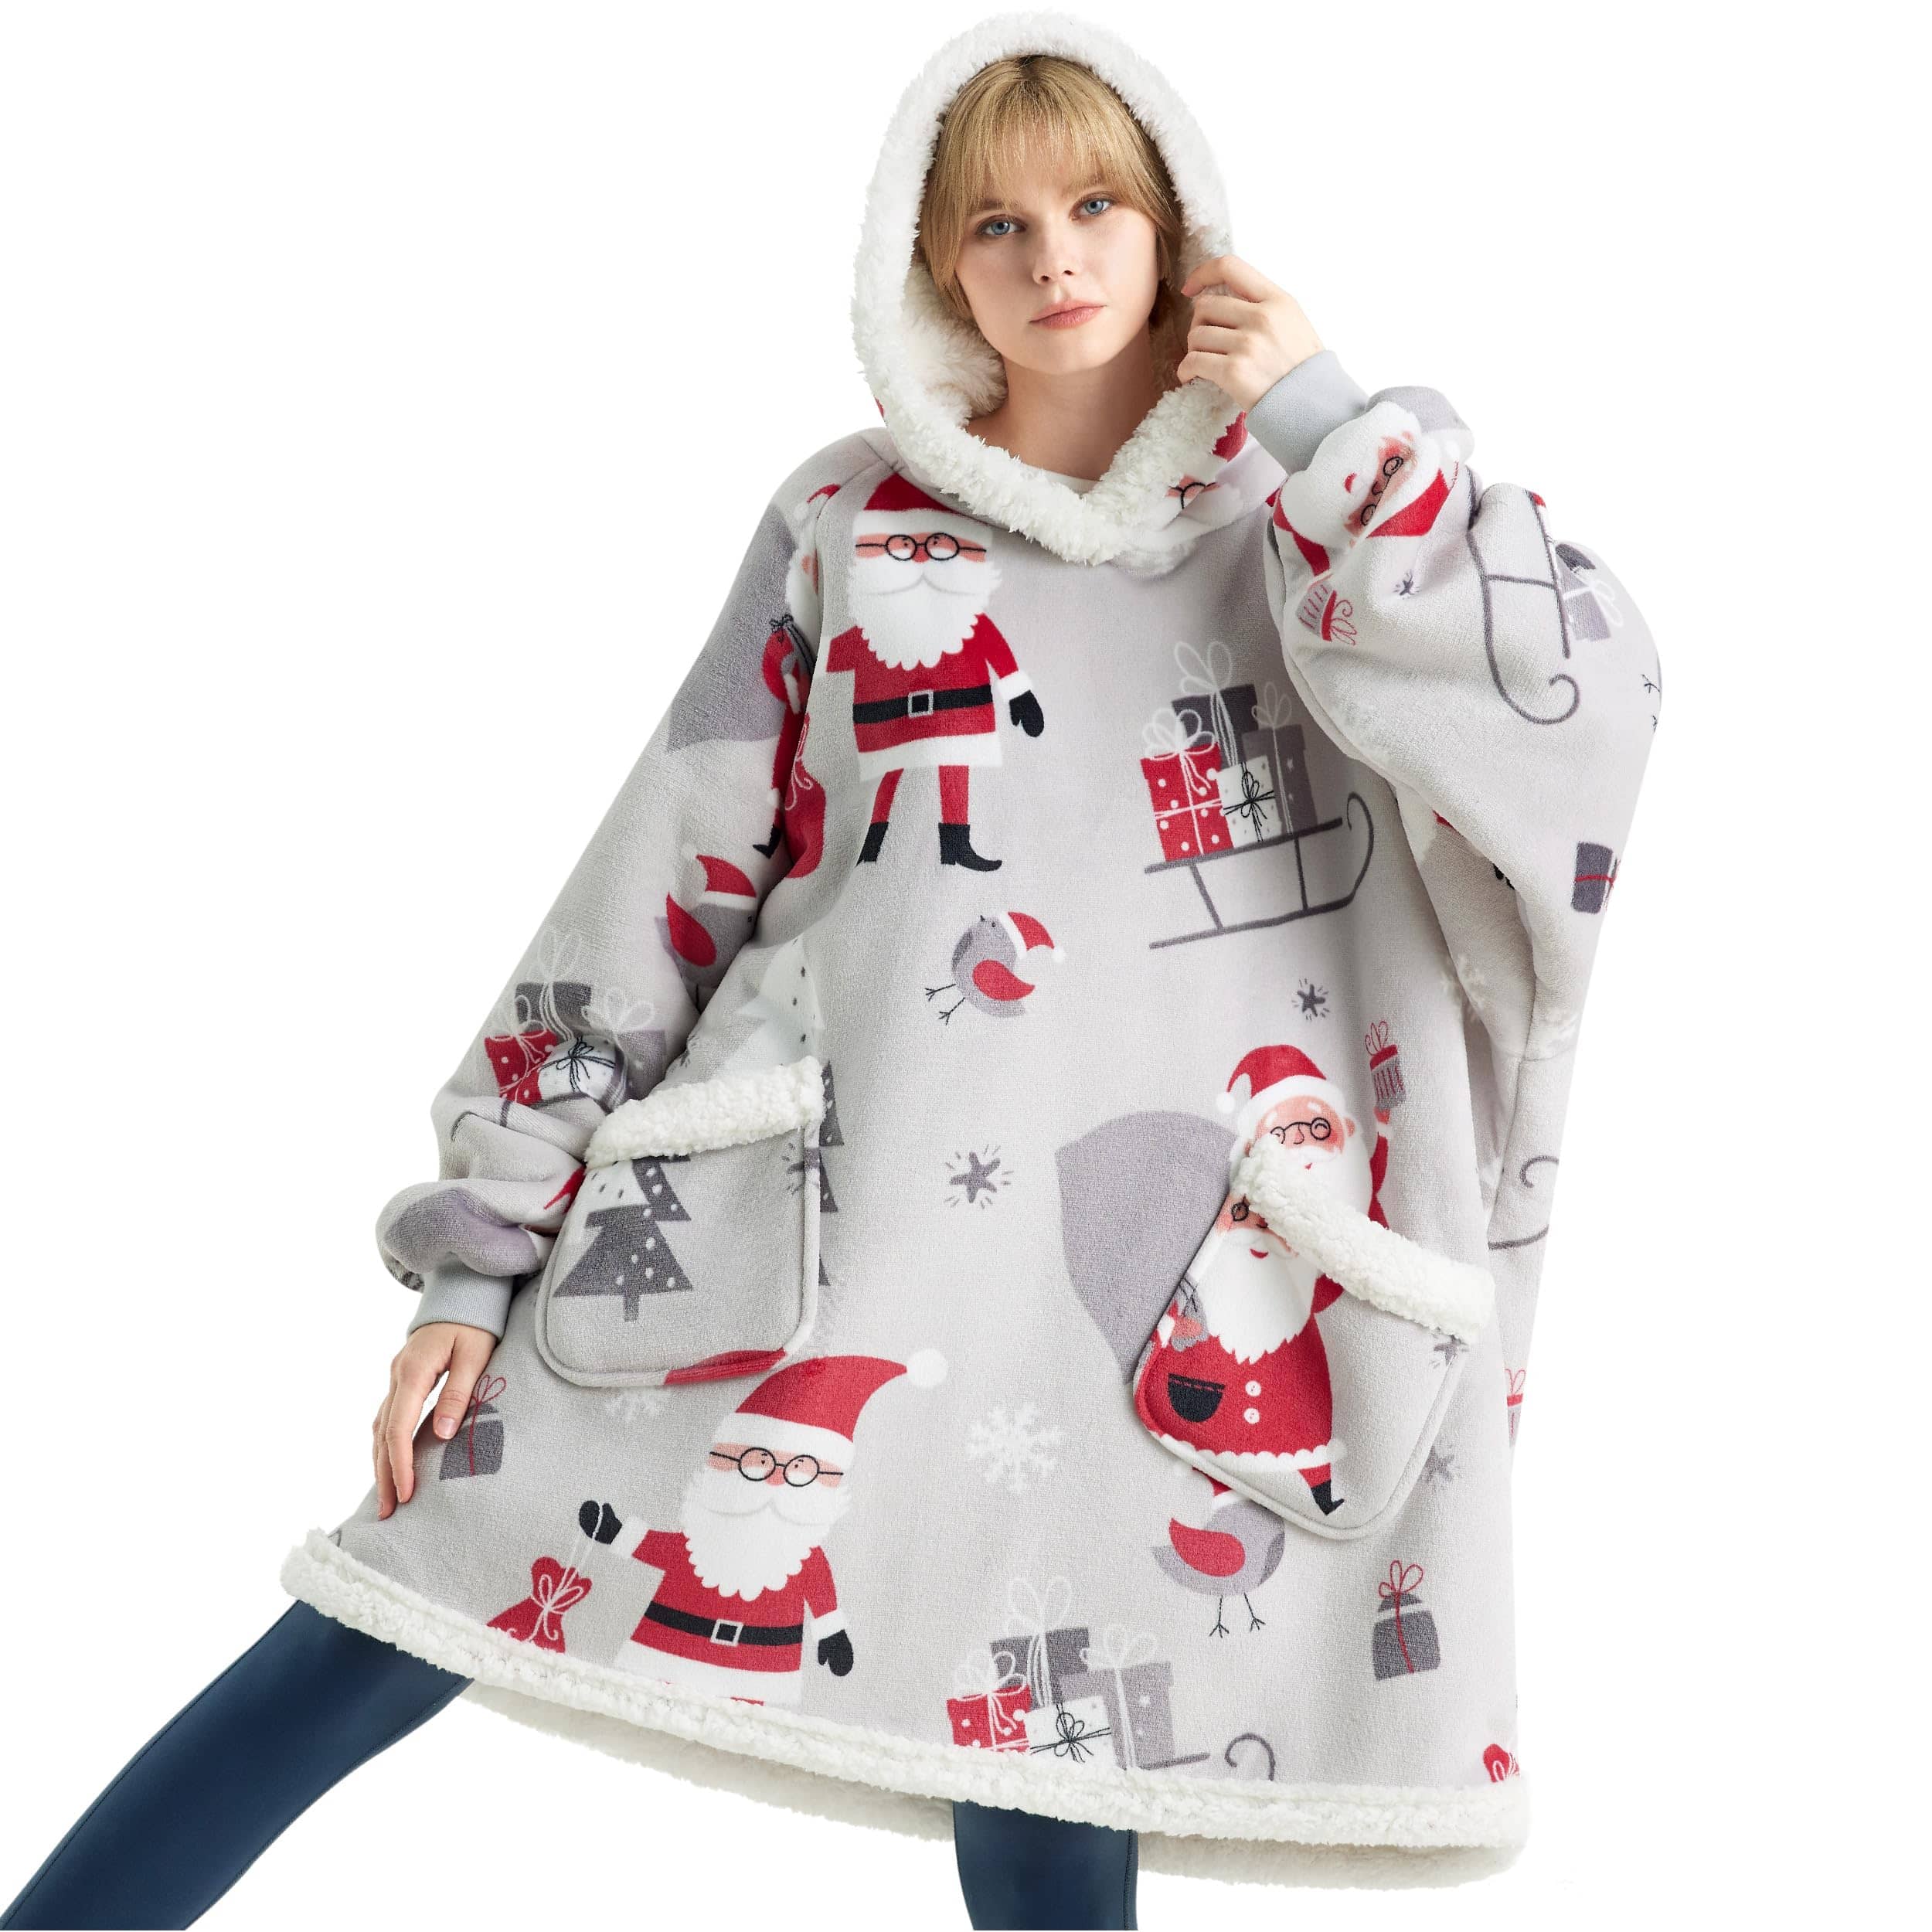 Sherpa Fleece Printed Short Wearable Blanket Hoodie